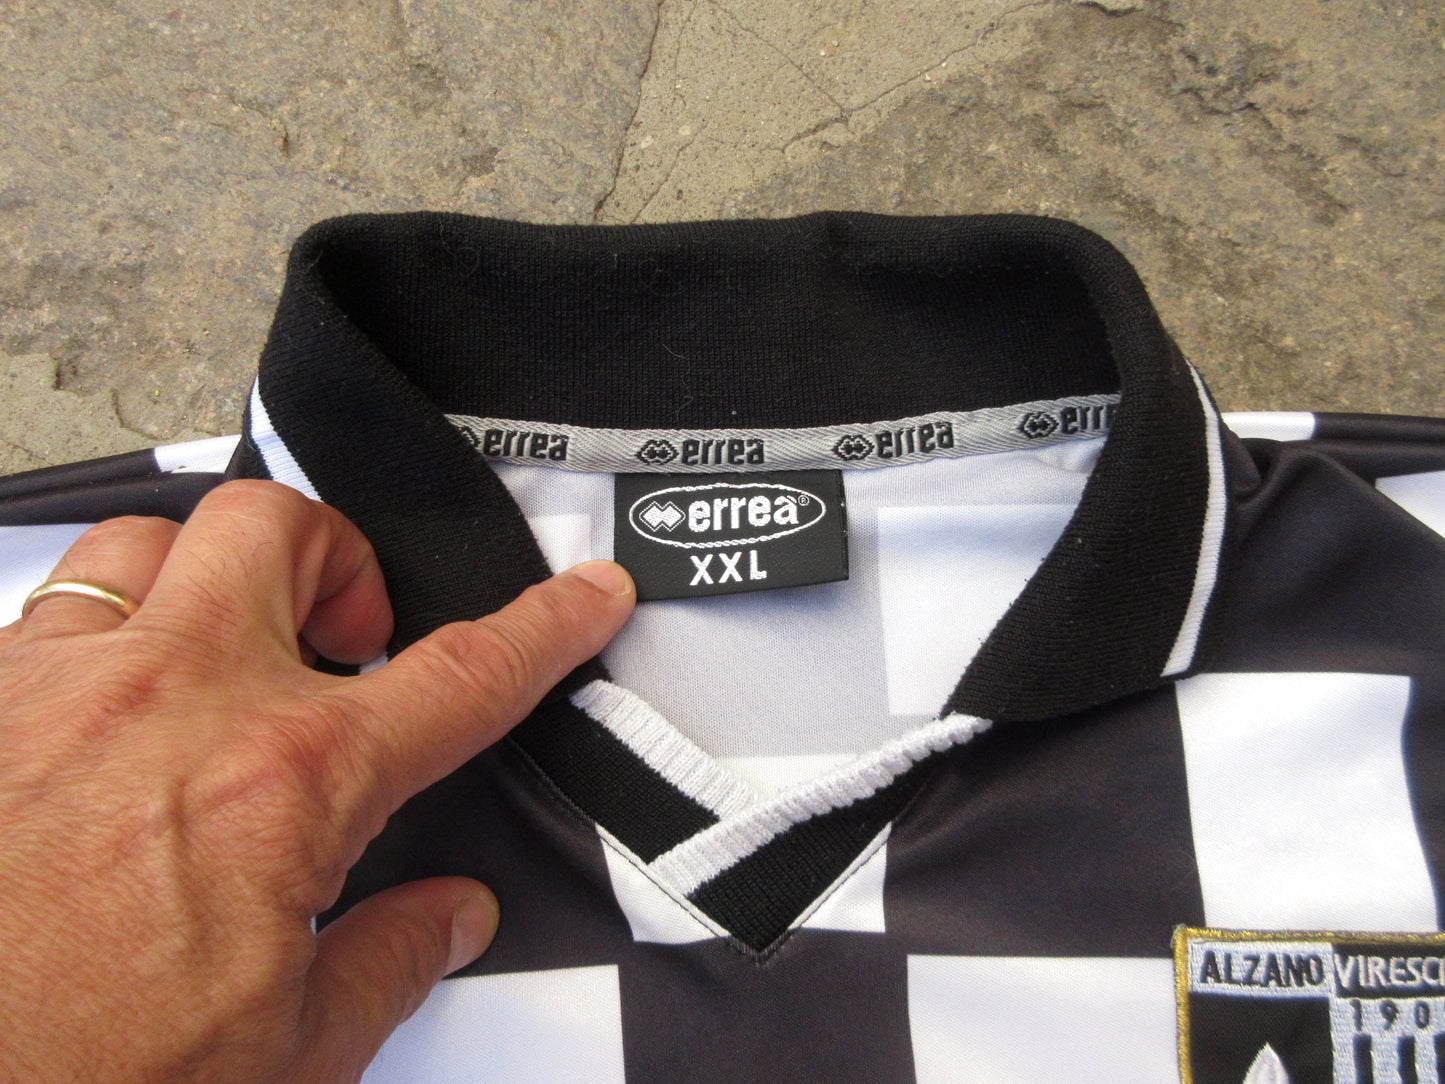 ALZANO VIRESCIT, football shirt.